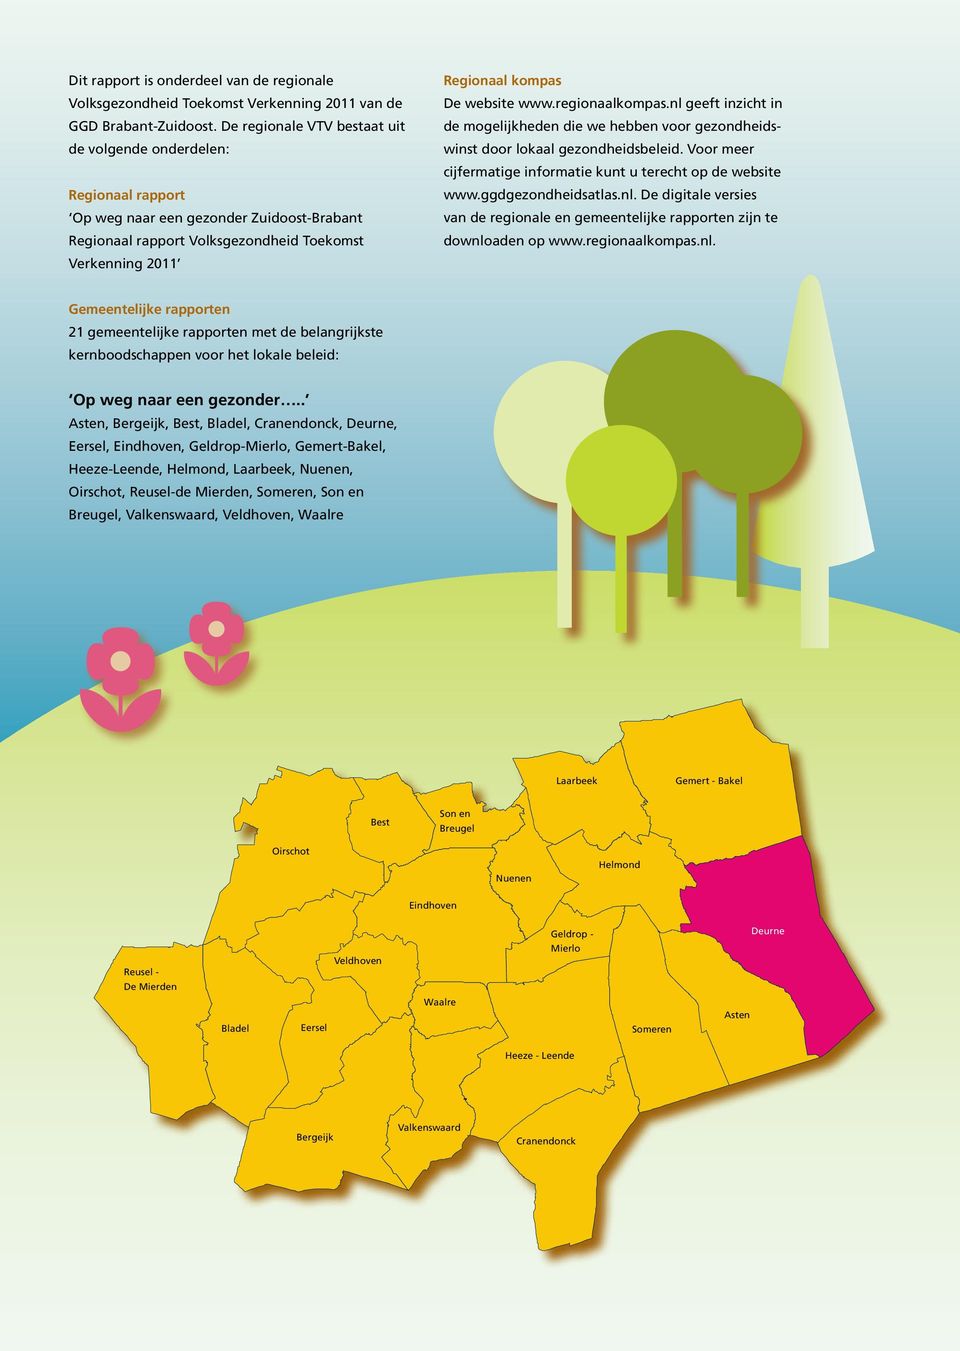 www.regionaalkompas.nl geeft inzicht in de mogelijkheden die we hebben voor gezondheidswinst door lokaal gezondheidsbeleid. Voor meer cijfermatige informatie kunt u terecht op de website www.